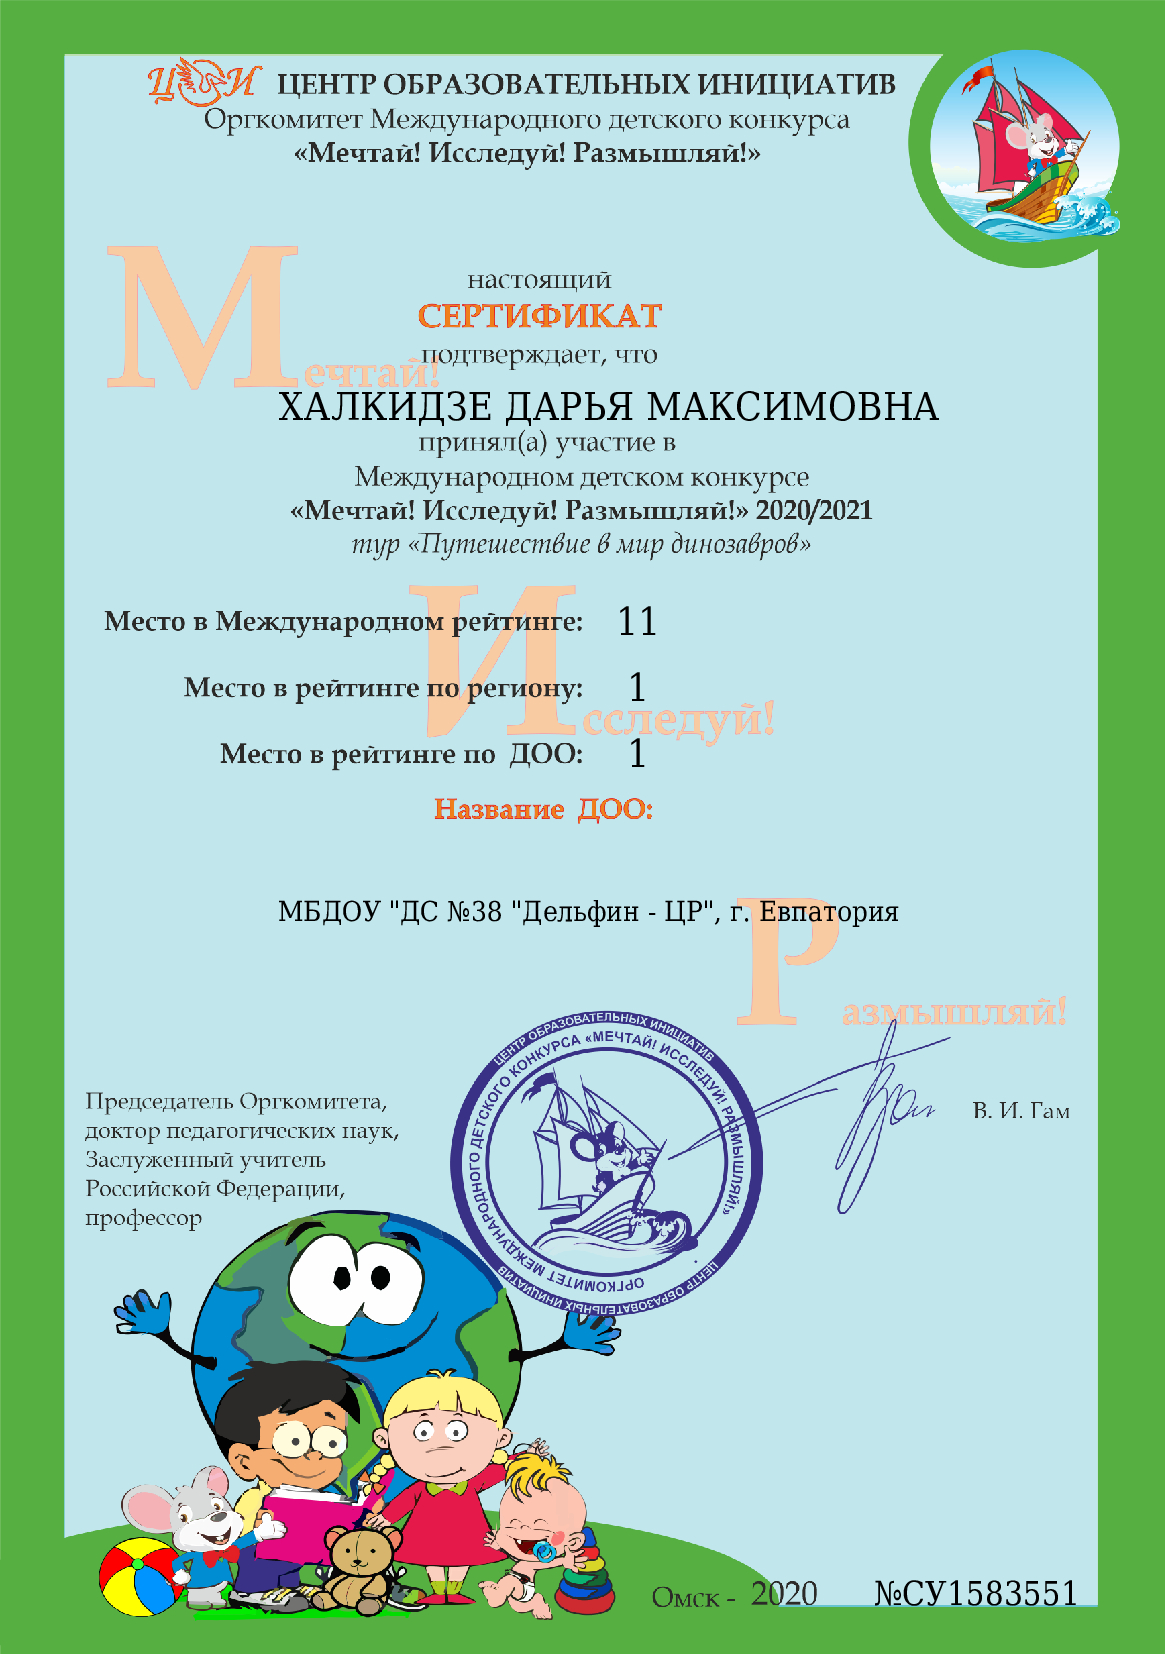 Сертификат победителя - Халкидзе Дарья